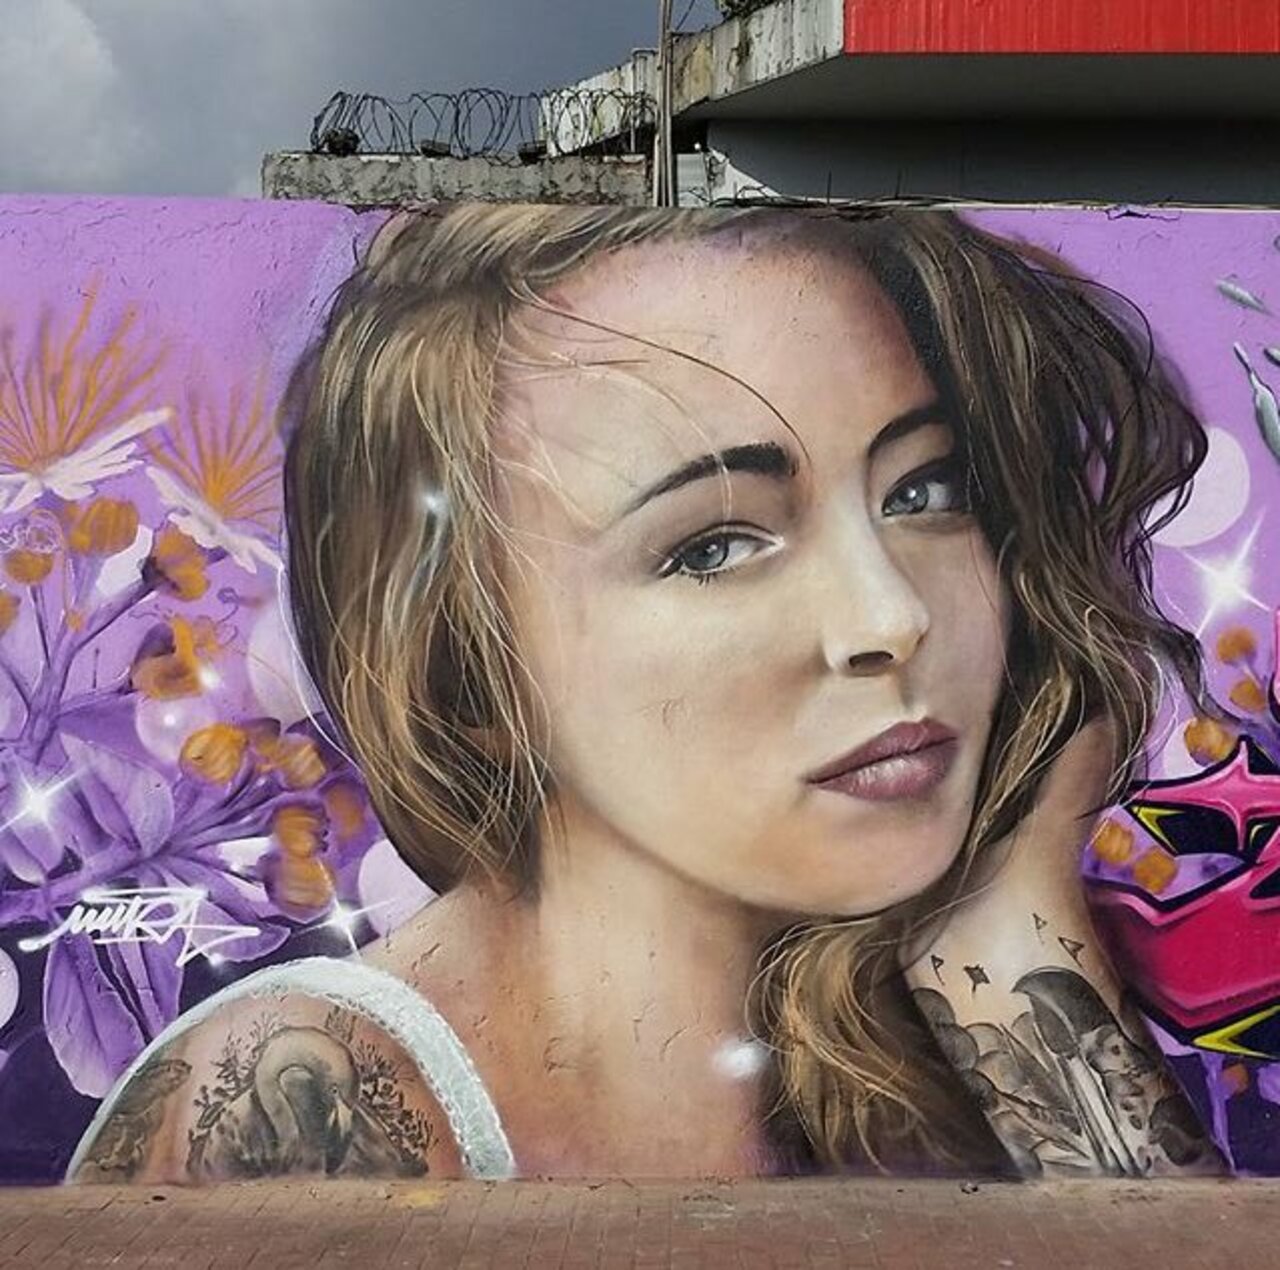 New Street Art by Mantarea 

#art #graffiti #mural #streetart https://t.co/Yr9a5MgIhh